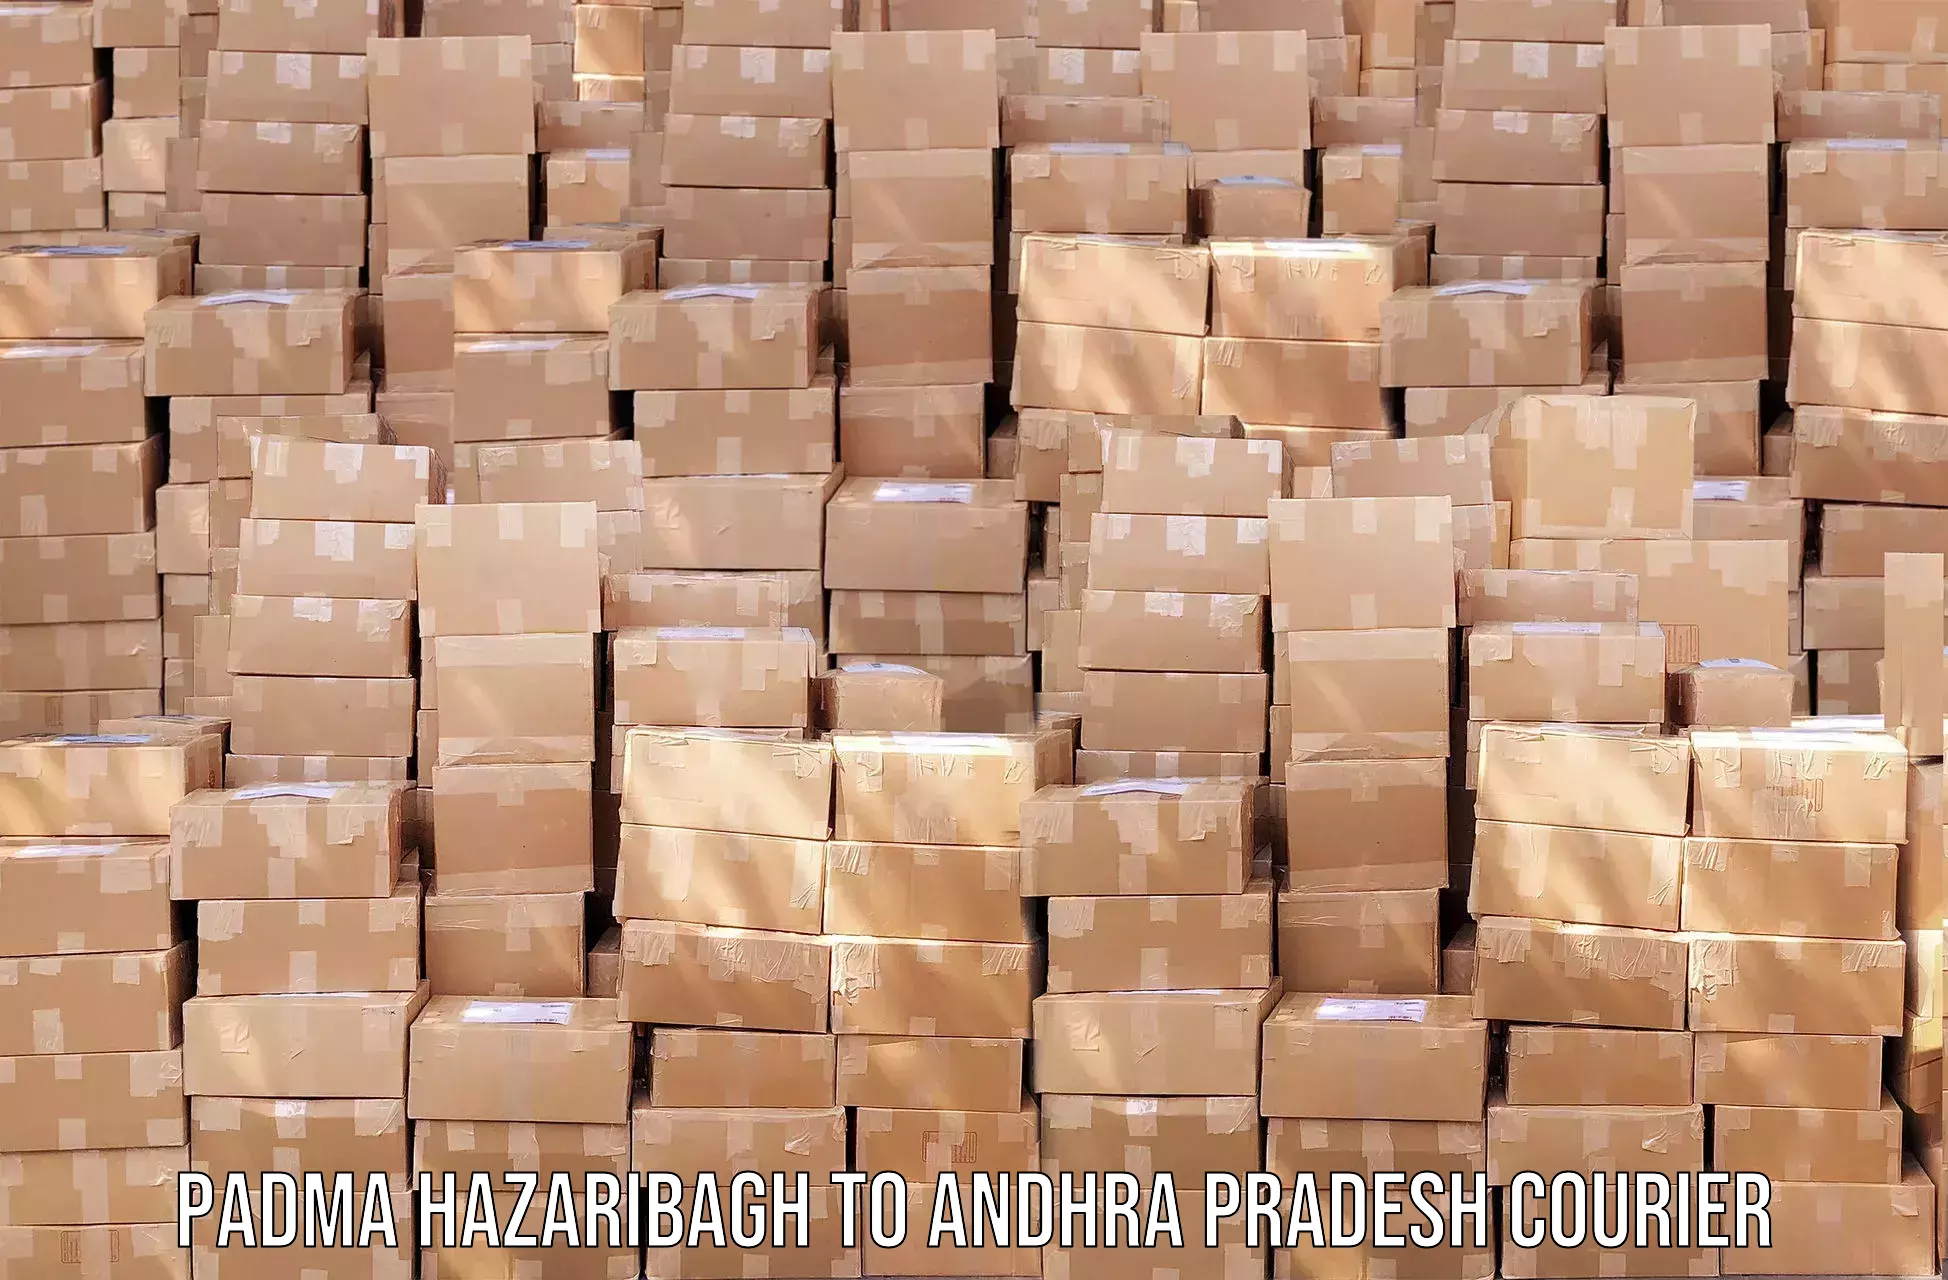 Smart courier technologies Padma Hazaribagh to Parchoor